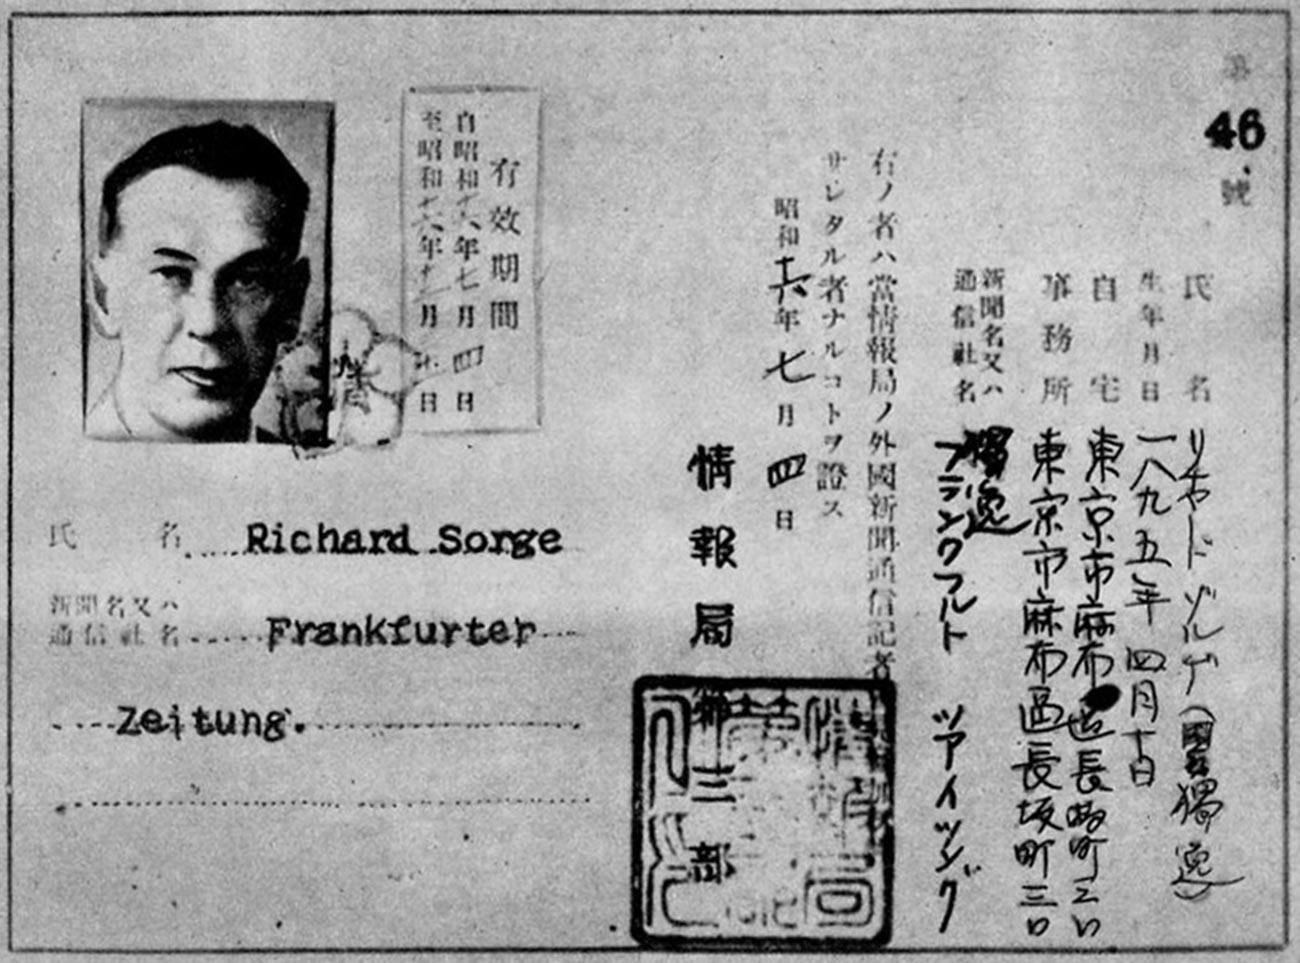 Dokumenti Richarda Sorgea, govorca na nemški ambasadi na Japonskem